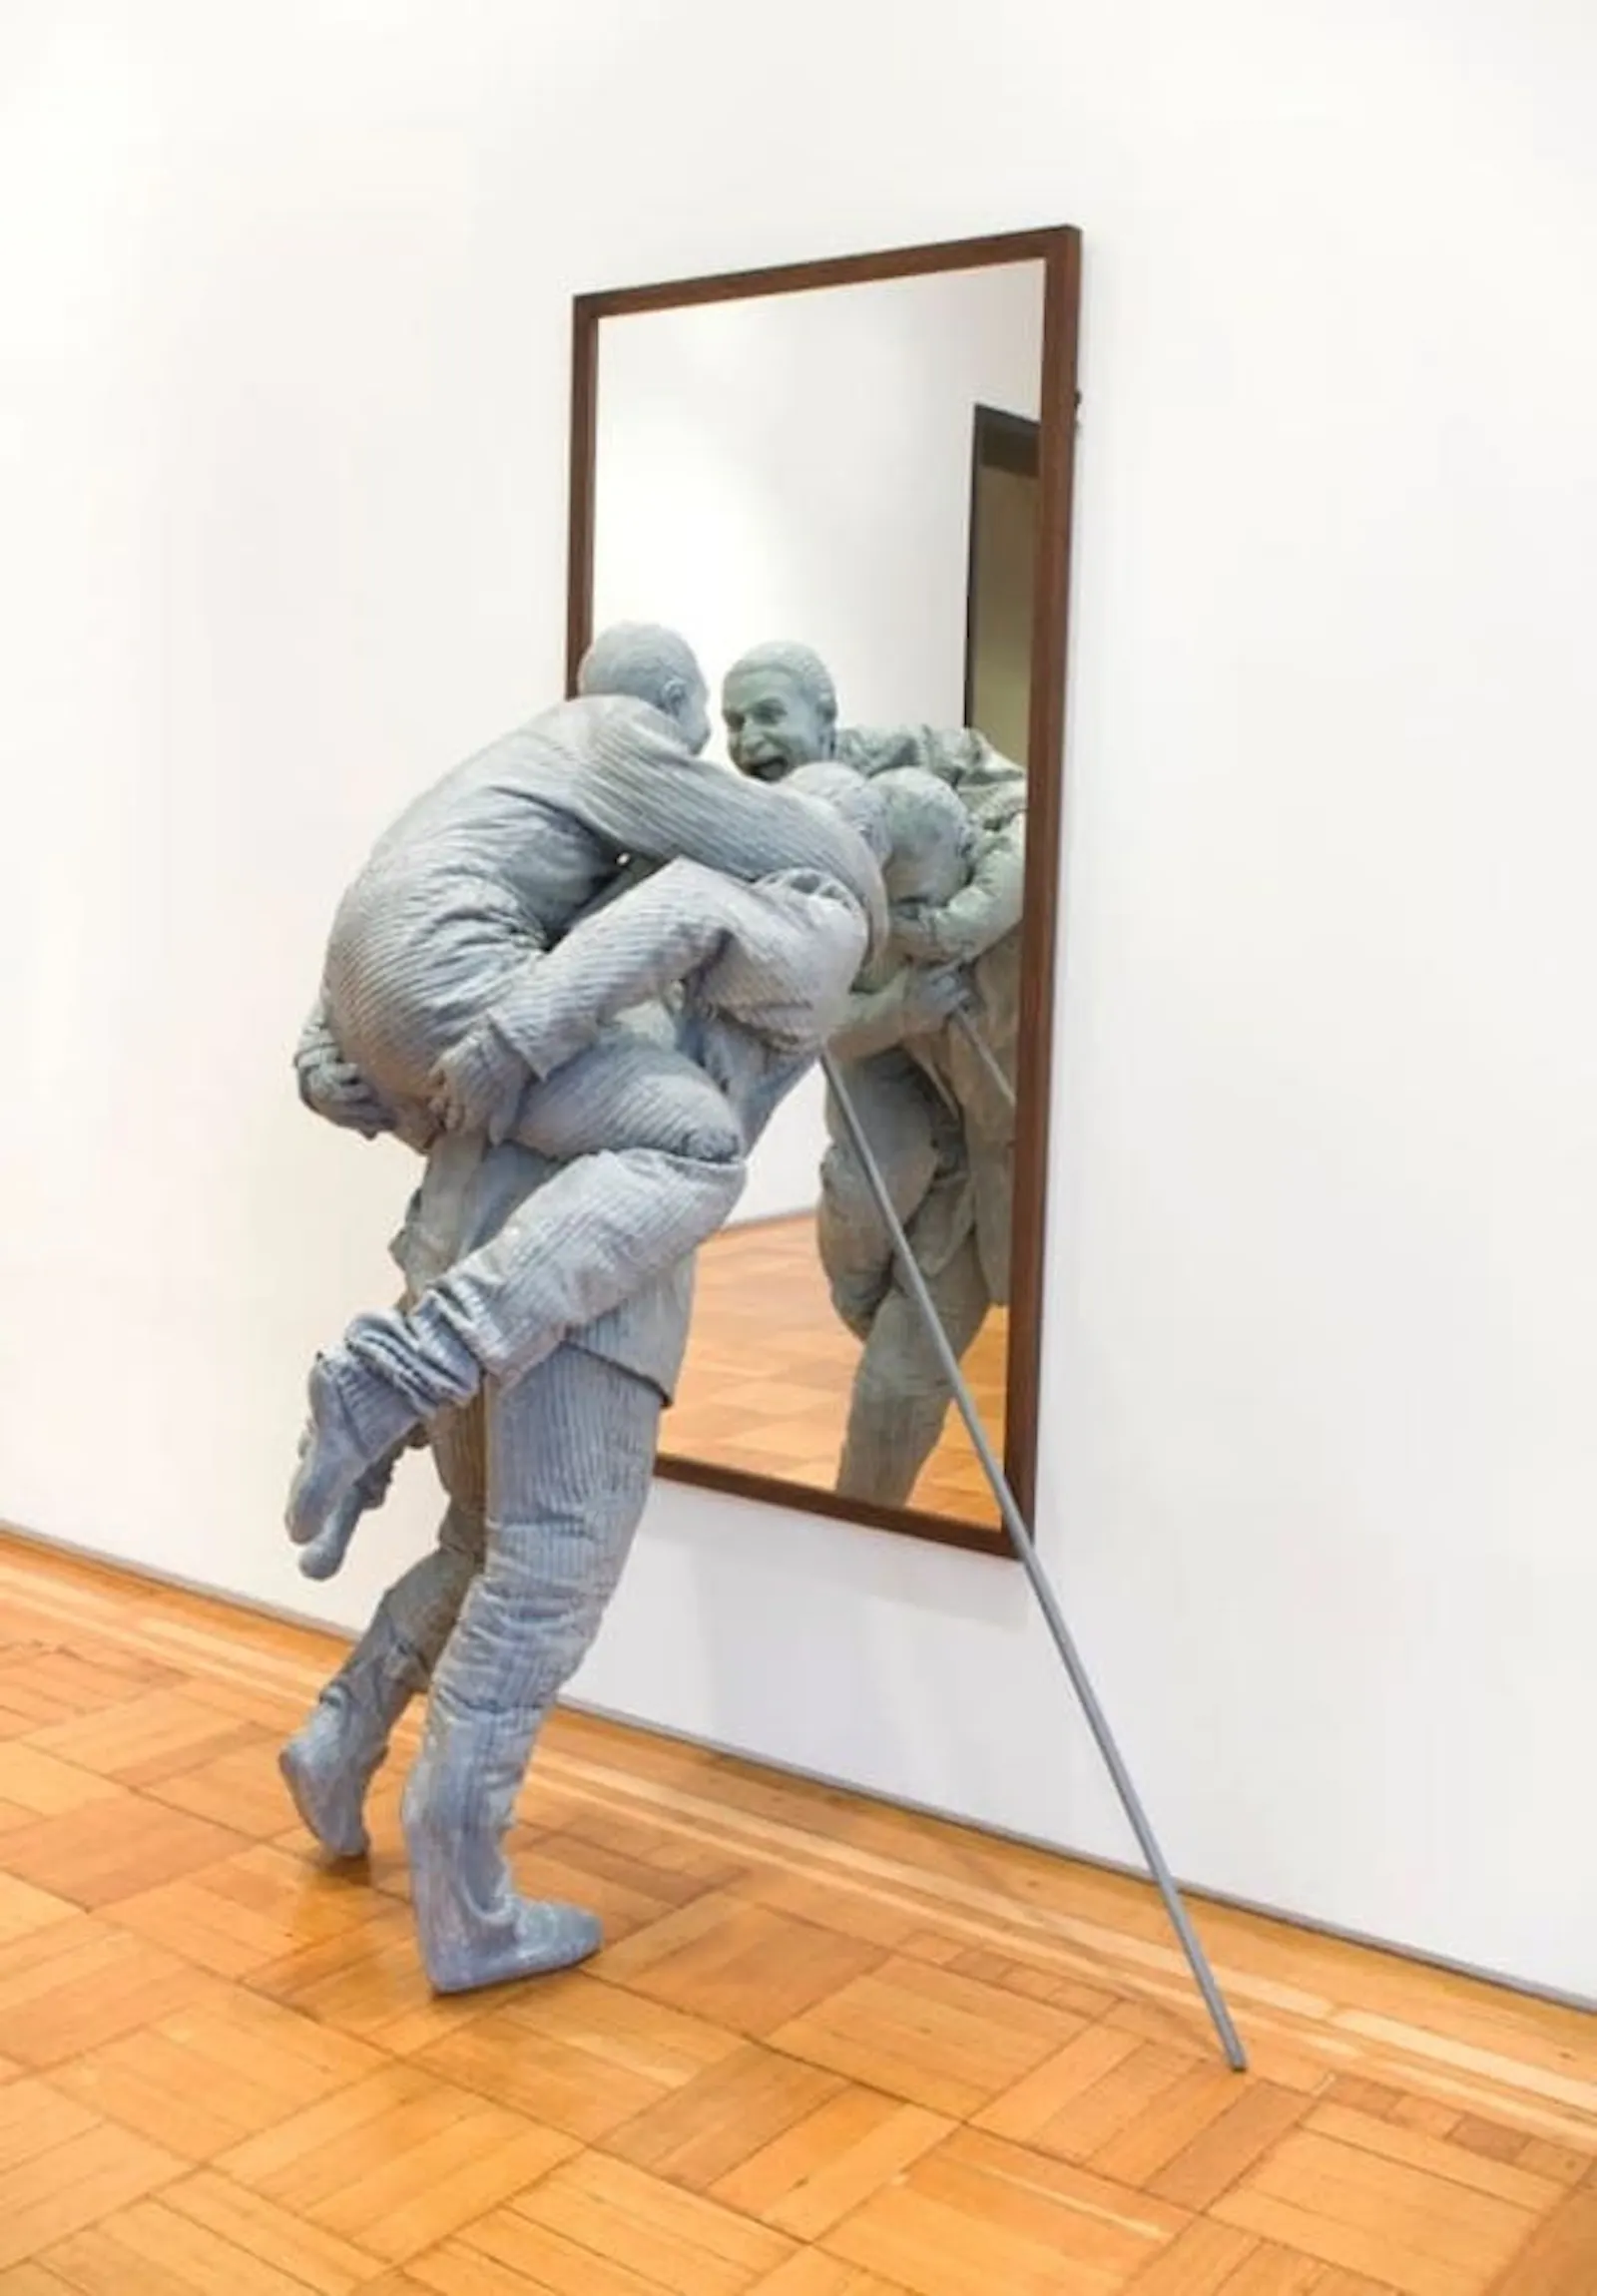 Juan Muñoz hace una escultura de dos hombres, uno al caballito del otro que se miran en un espejo y se ríen.